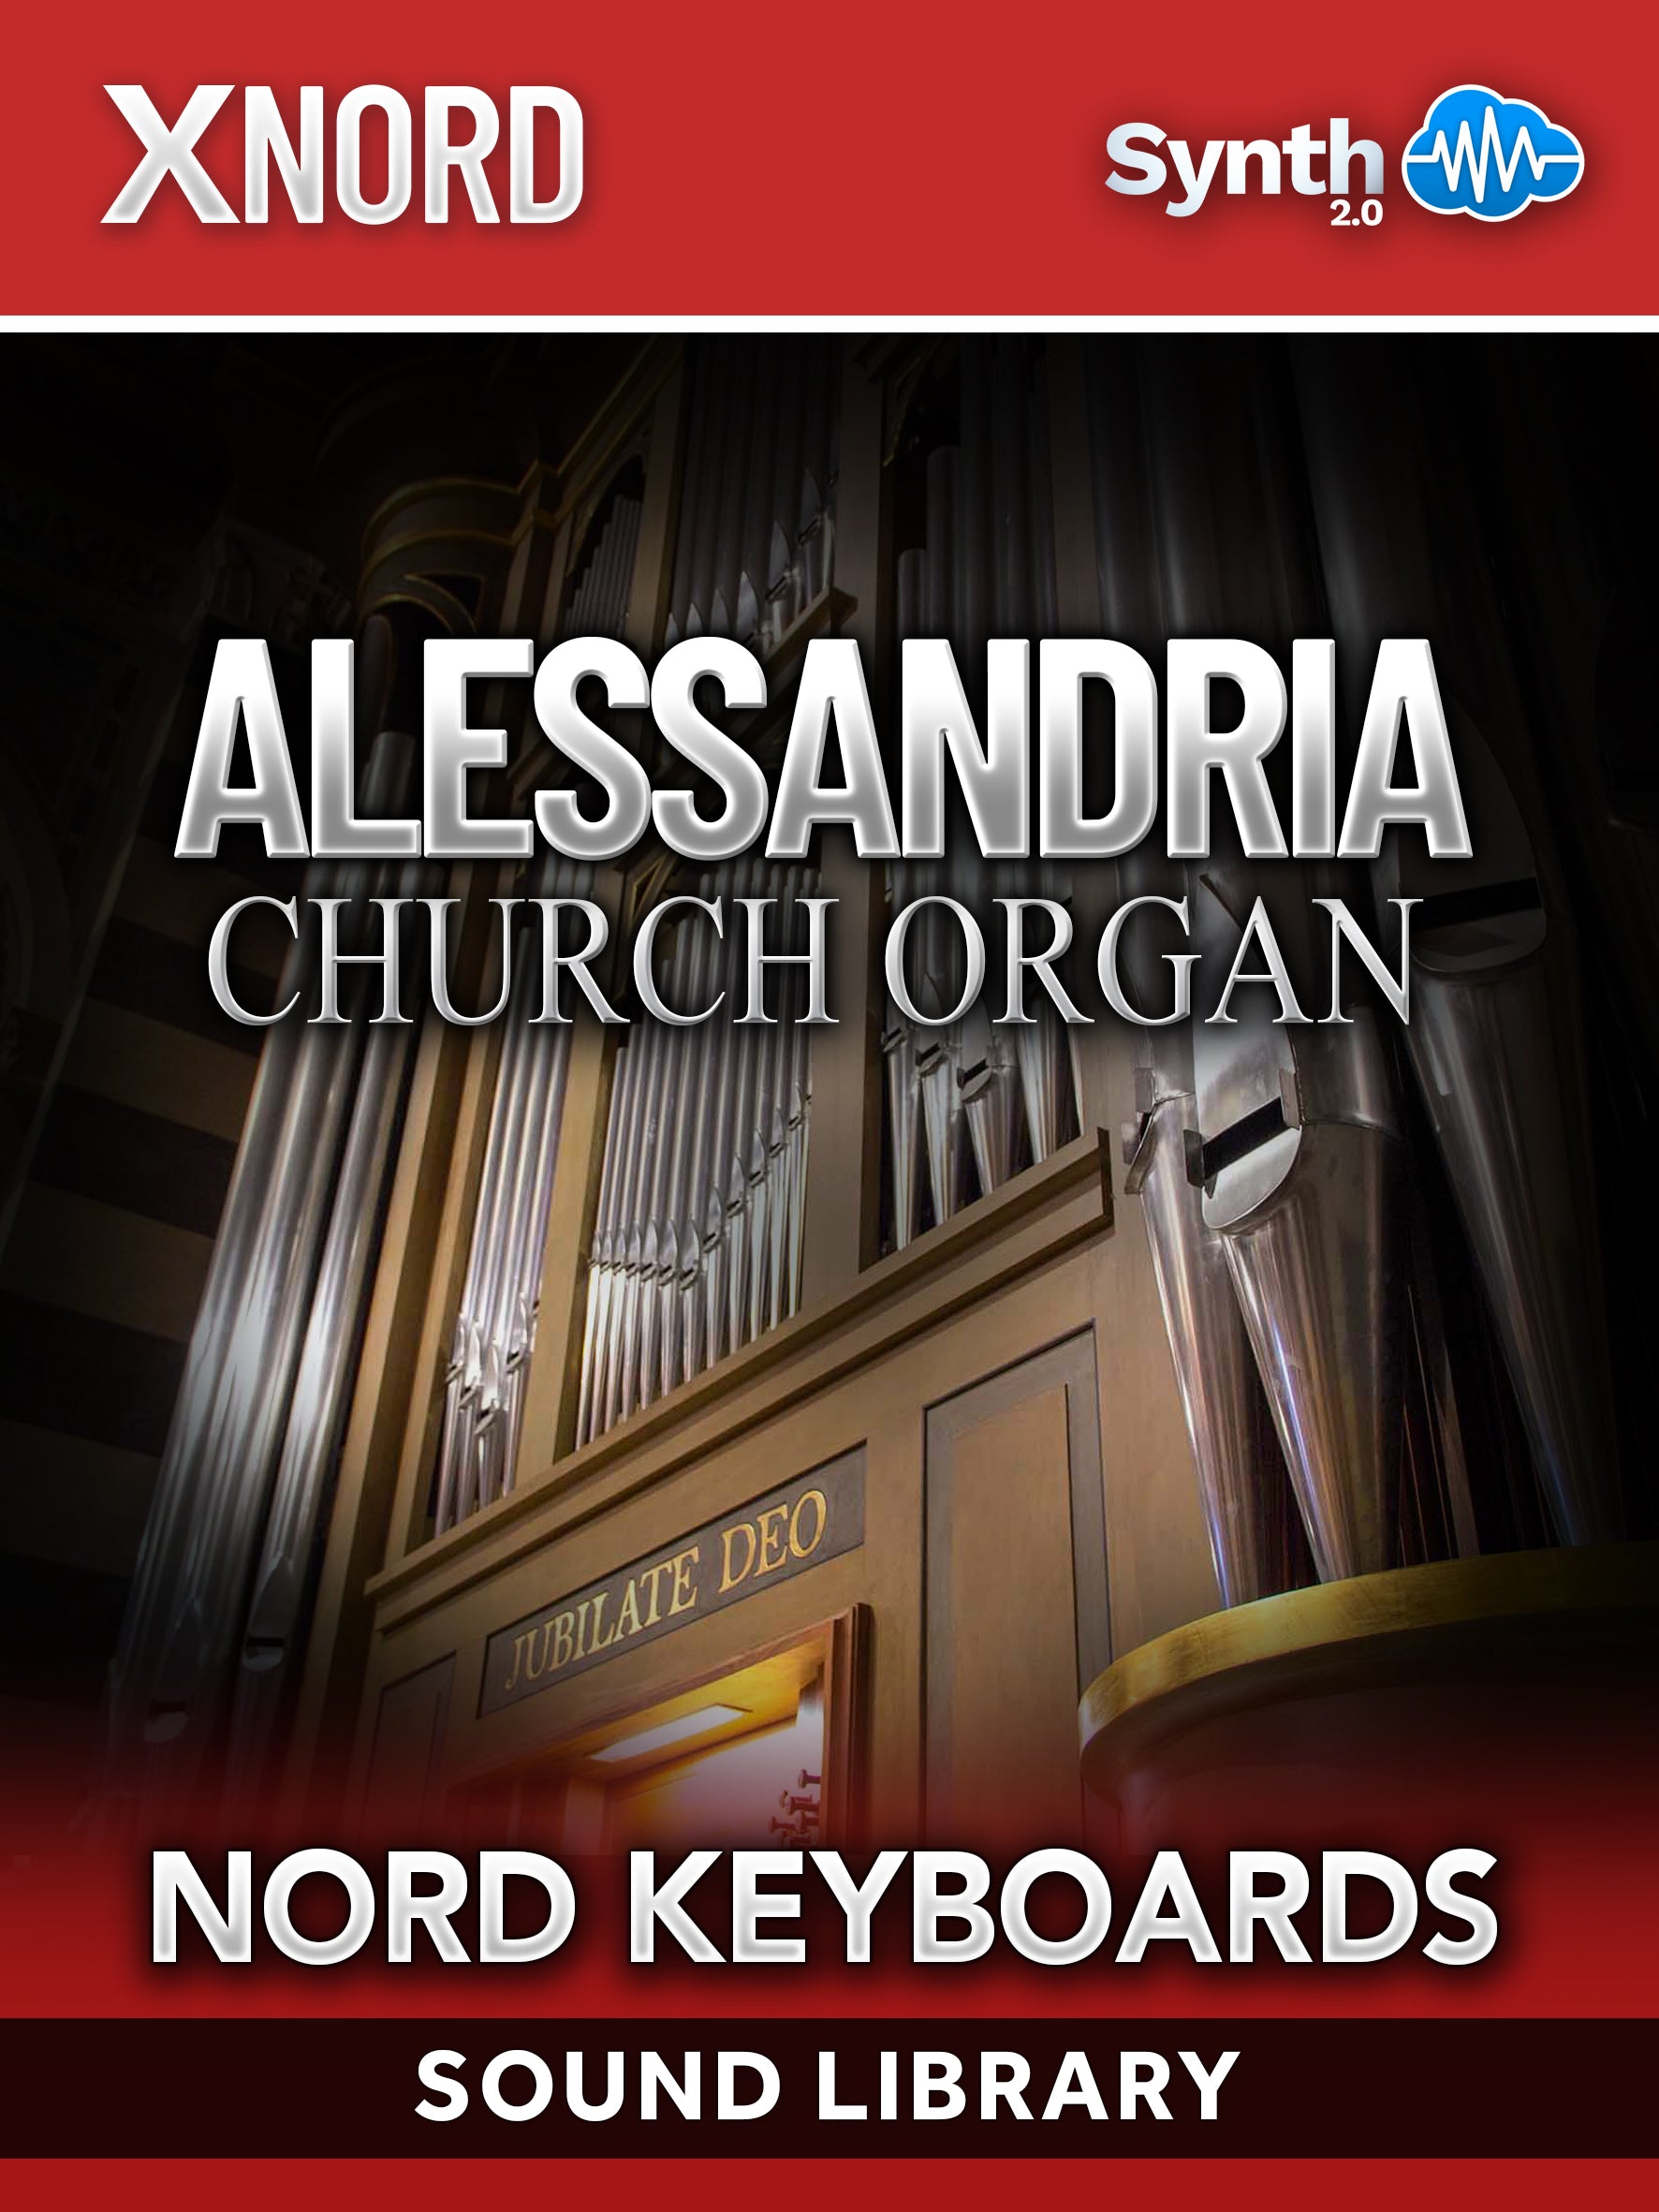 RCL014 - ( Bundle ) - Alessandria Organ + Ledziny, St. Clement Organ - Nord Keyboards